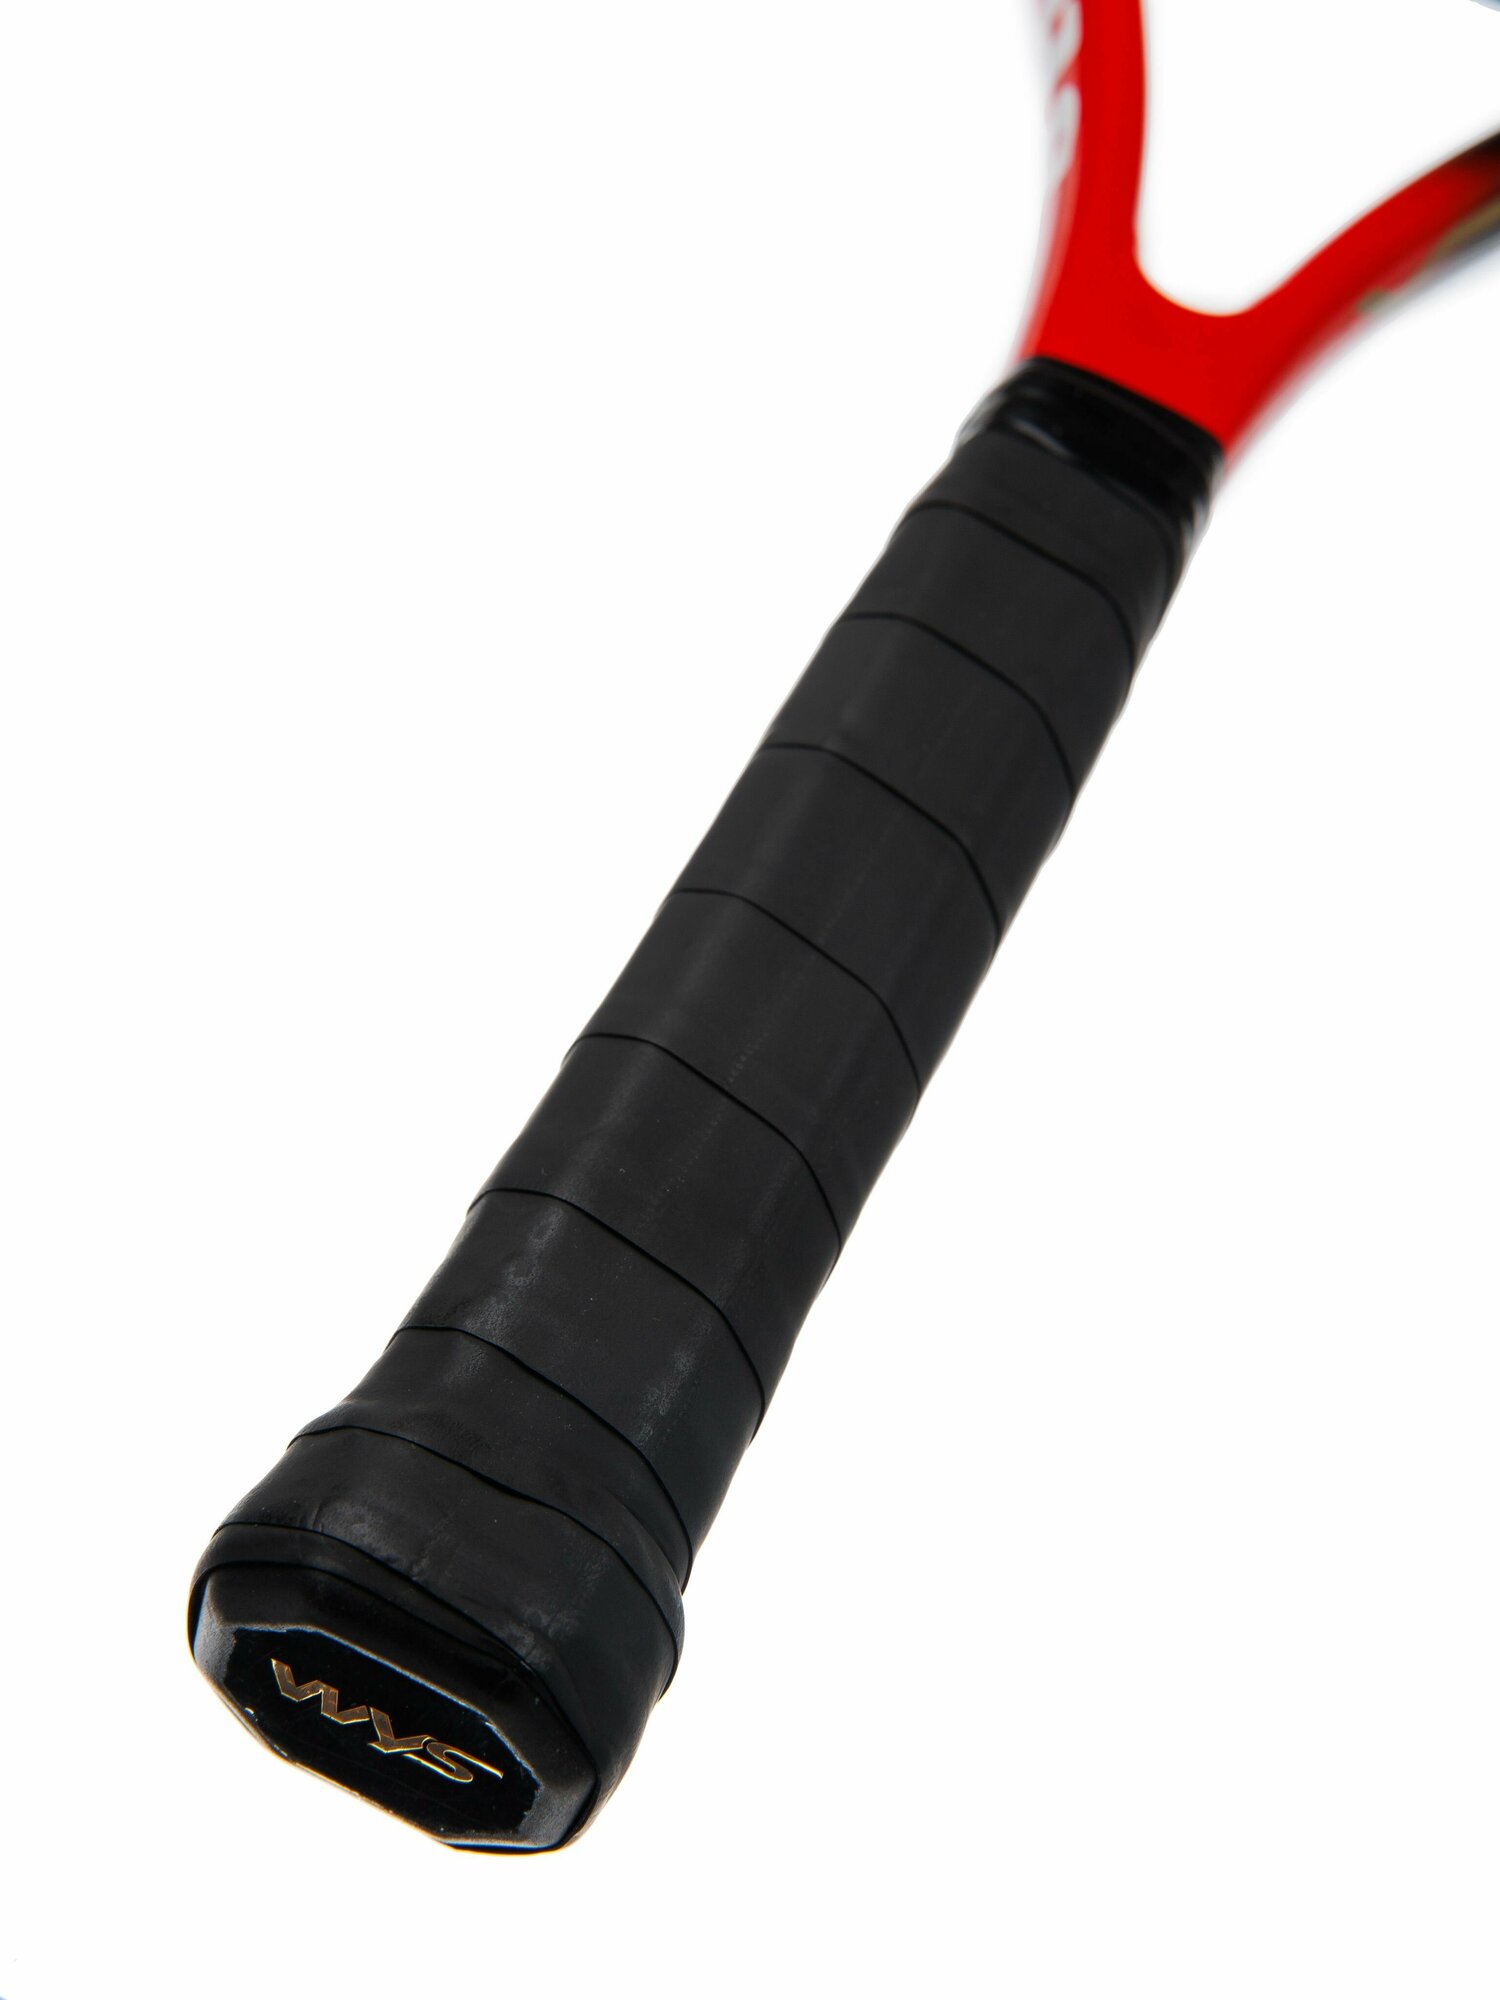 Ракетка для игры в большой теннис Mr. Fox Explosive с чехлом, красно-черная